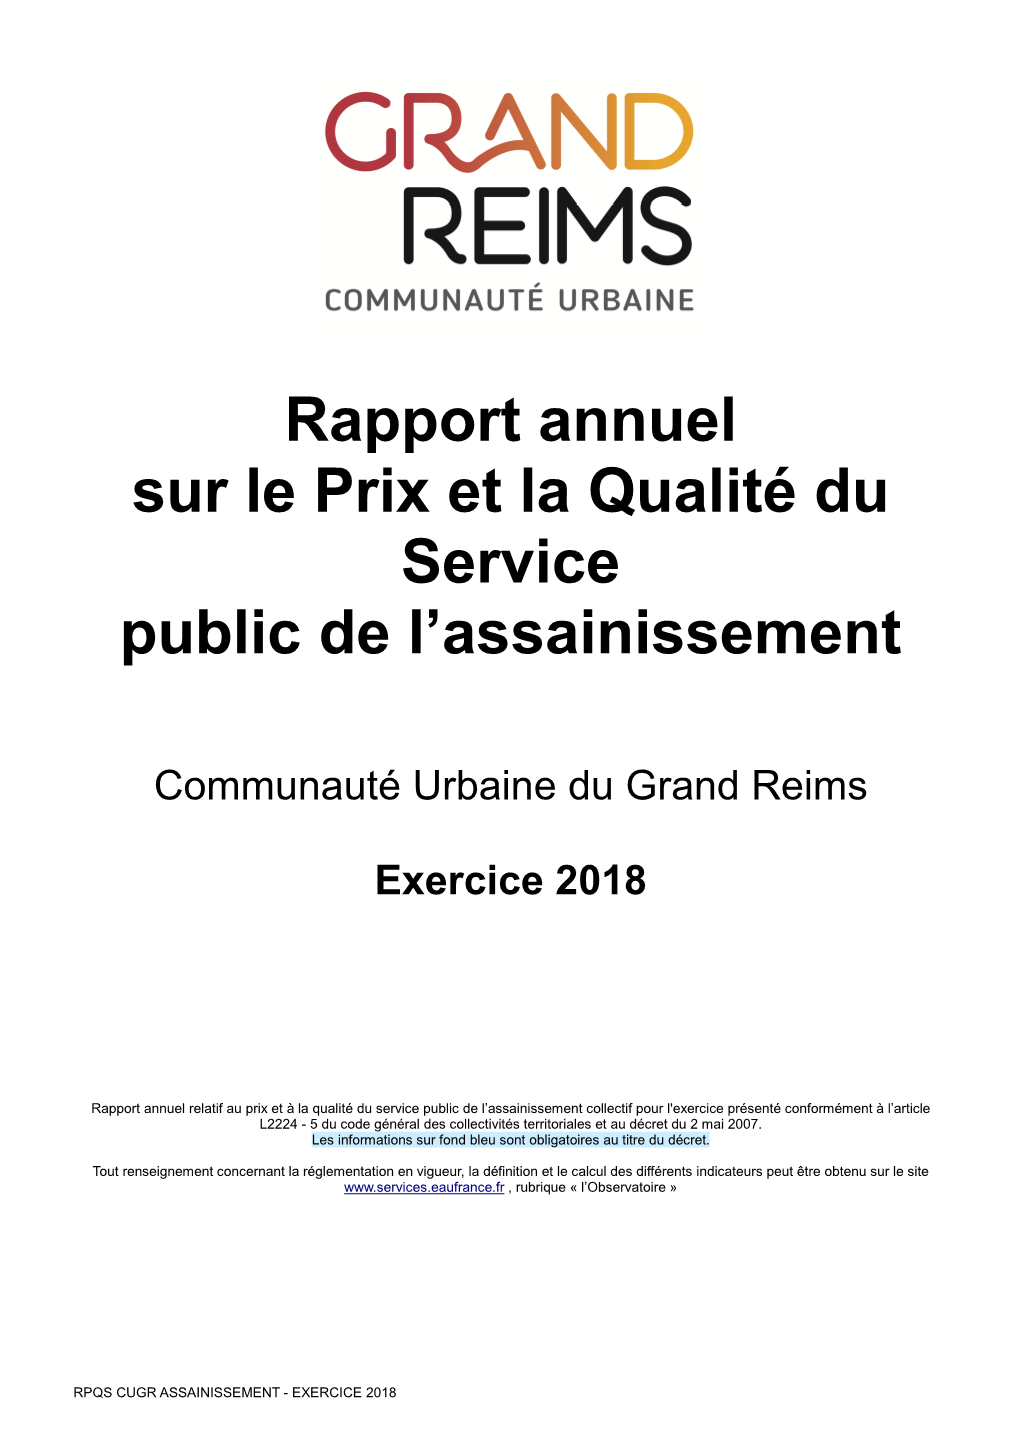 Rapport Annuel Sur Le Prix Et La Qualité Du Service Public De L’Assainissement